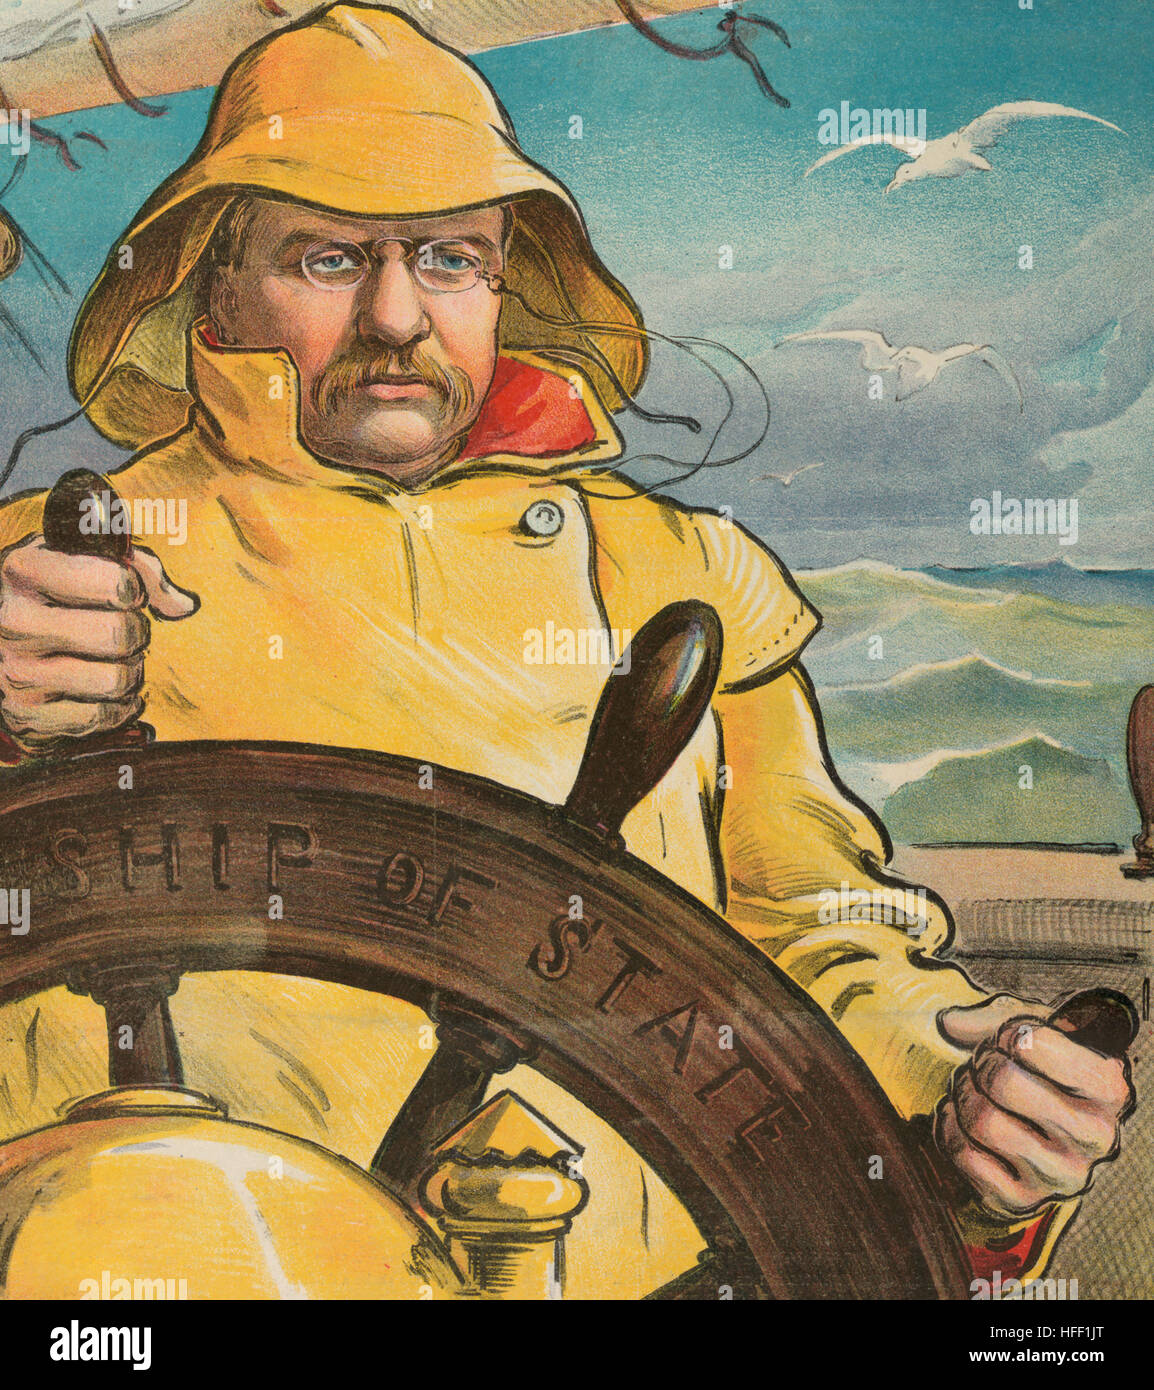 'Trouve la barre en mains sûres" - Caricature politique montre le président Theodore Roosevelt, habillé pour une mer difficile, debout à la barre intitulée 'navire d'État', avec une prise ferme sur la roue. 1902 Banque D'Images